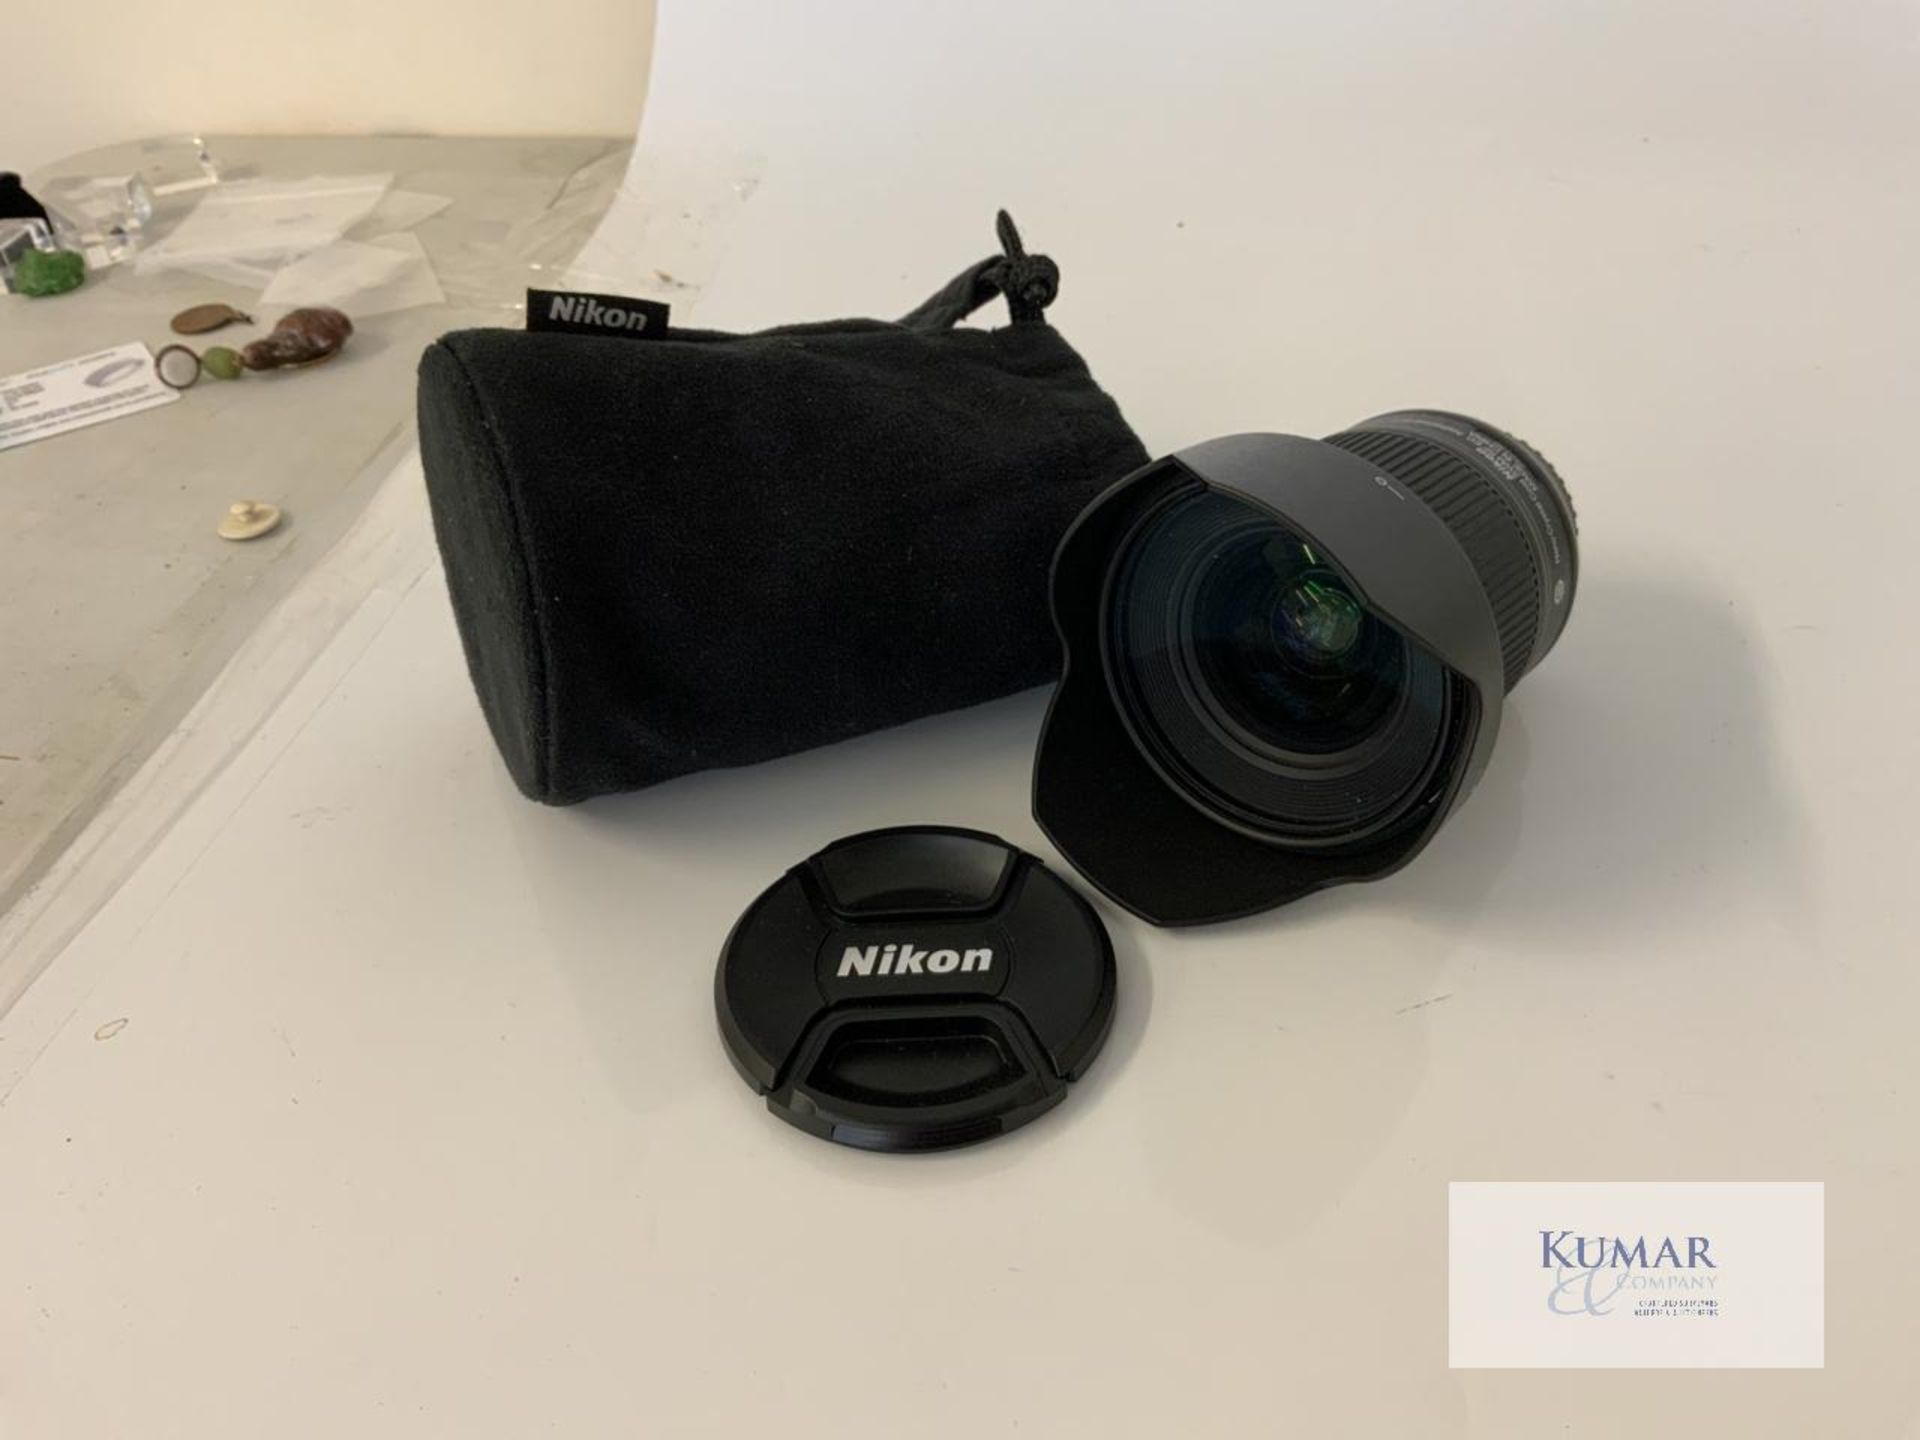 Nikon AF-S Nikkor 20mm 1:1.8G ED Zoom Lens with Nikon HB 72 Lens Hood & Carry Case - Image 9 of 10